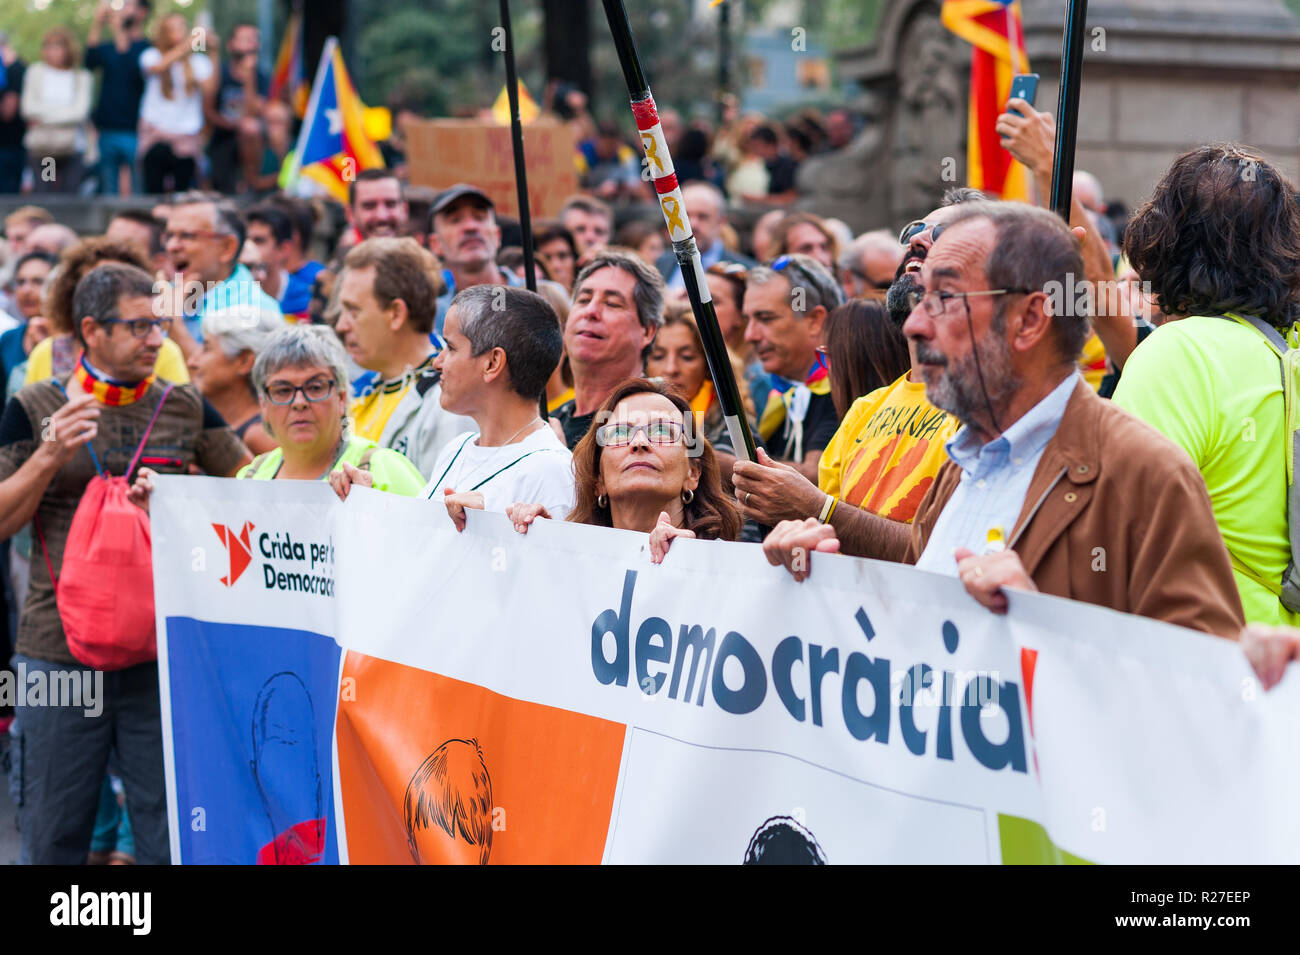 Barcelone, Espagne - 1 octobre 2018 : femme regarde drapeau catalan démocratie holding banner lors de manifestation pour l'indépendance catalane Banque D'Images